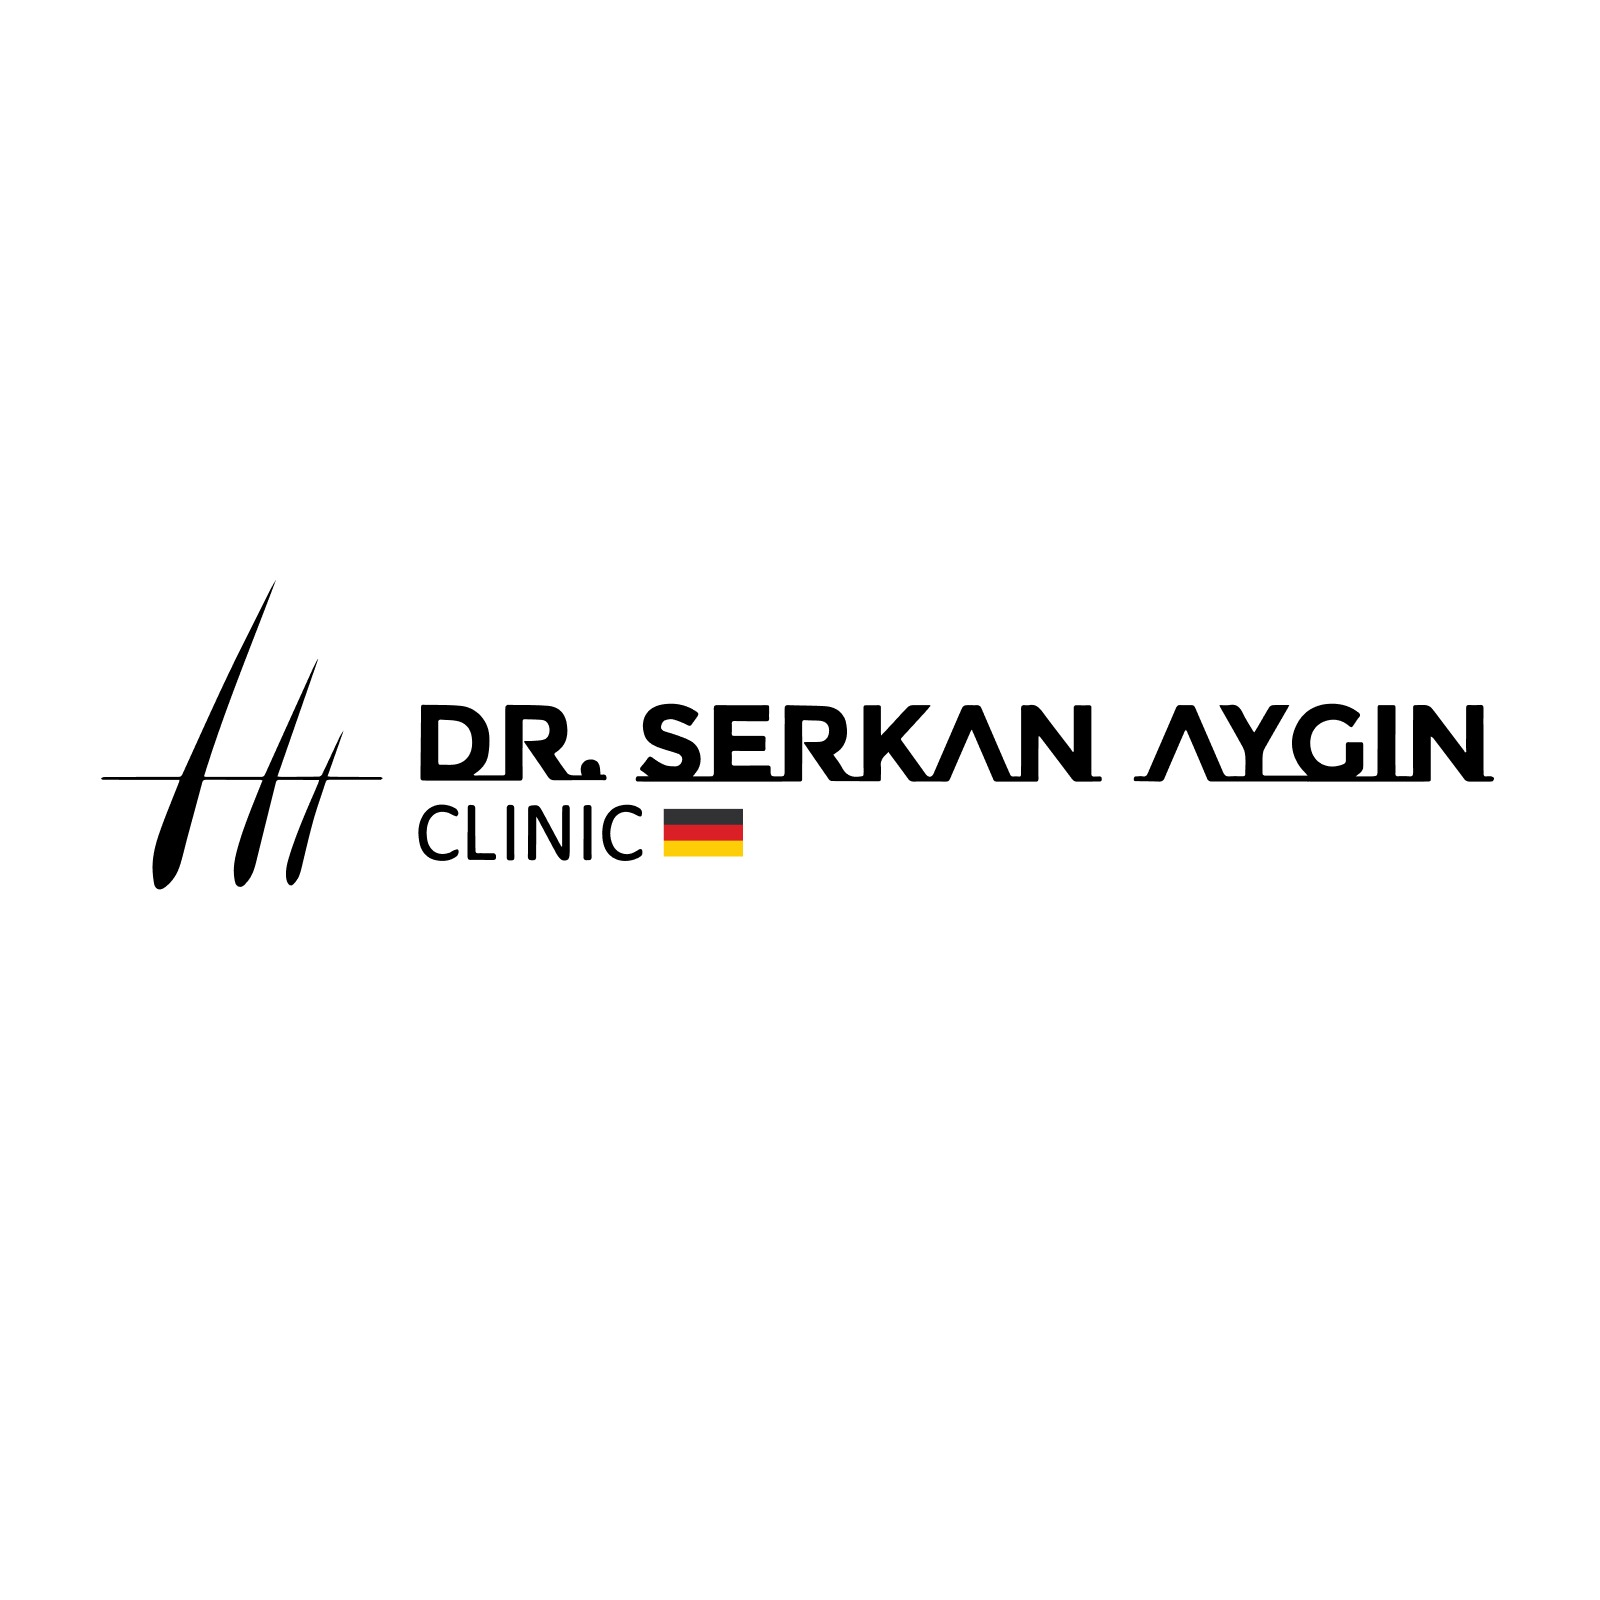 Haartransplantation Türkei - Logo von der Dr. Serkan Aygin Klinik in Istanbul